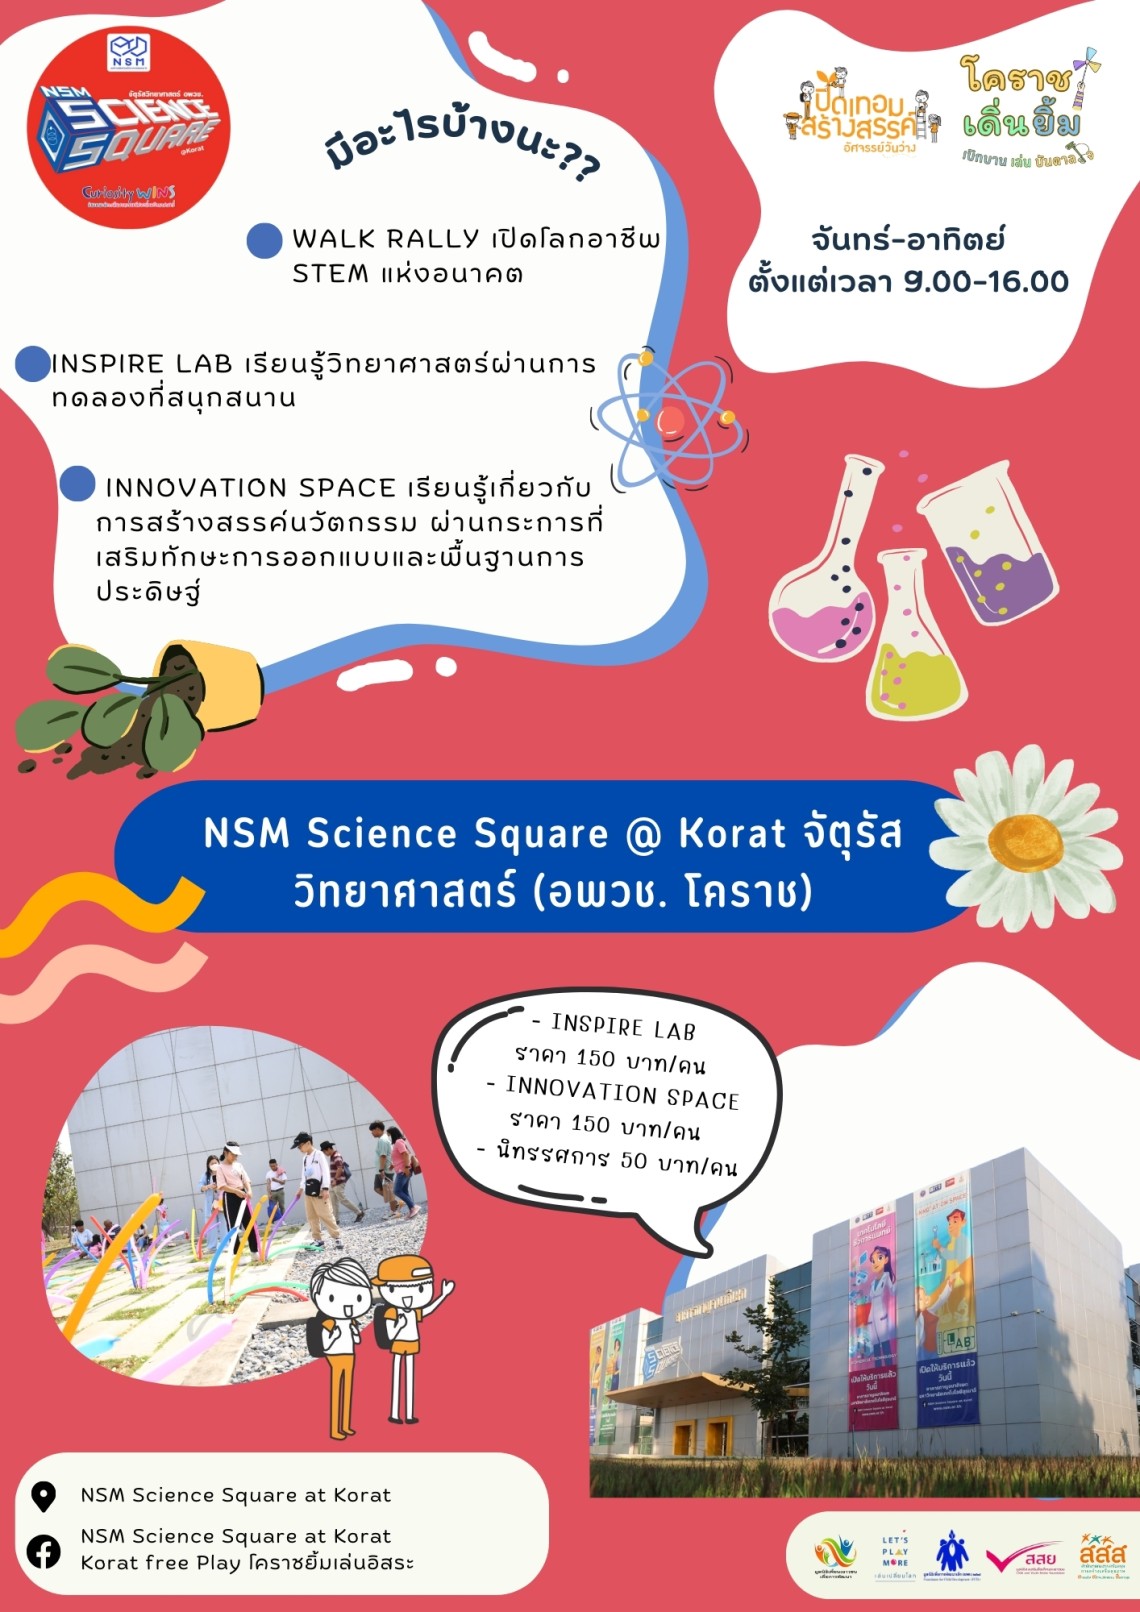 NSM Science Square @ Korat จัตุรัสวิทยาศาสตร์ (อพวช. โคราช)